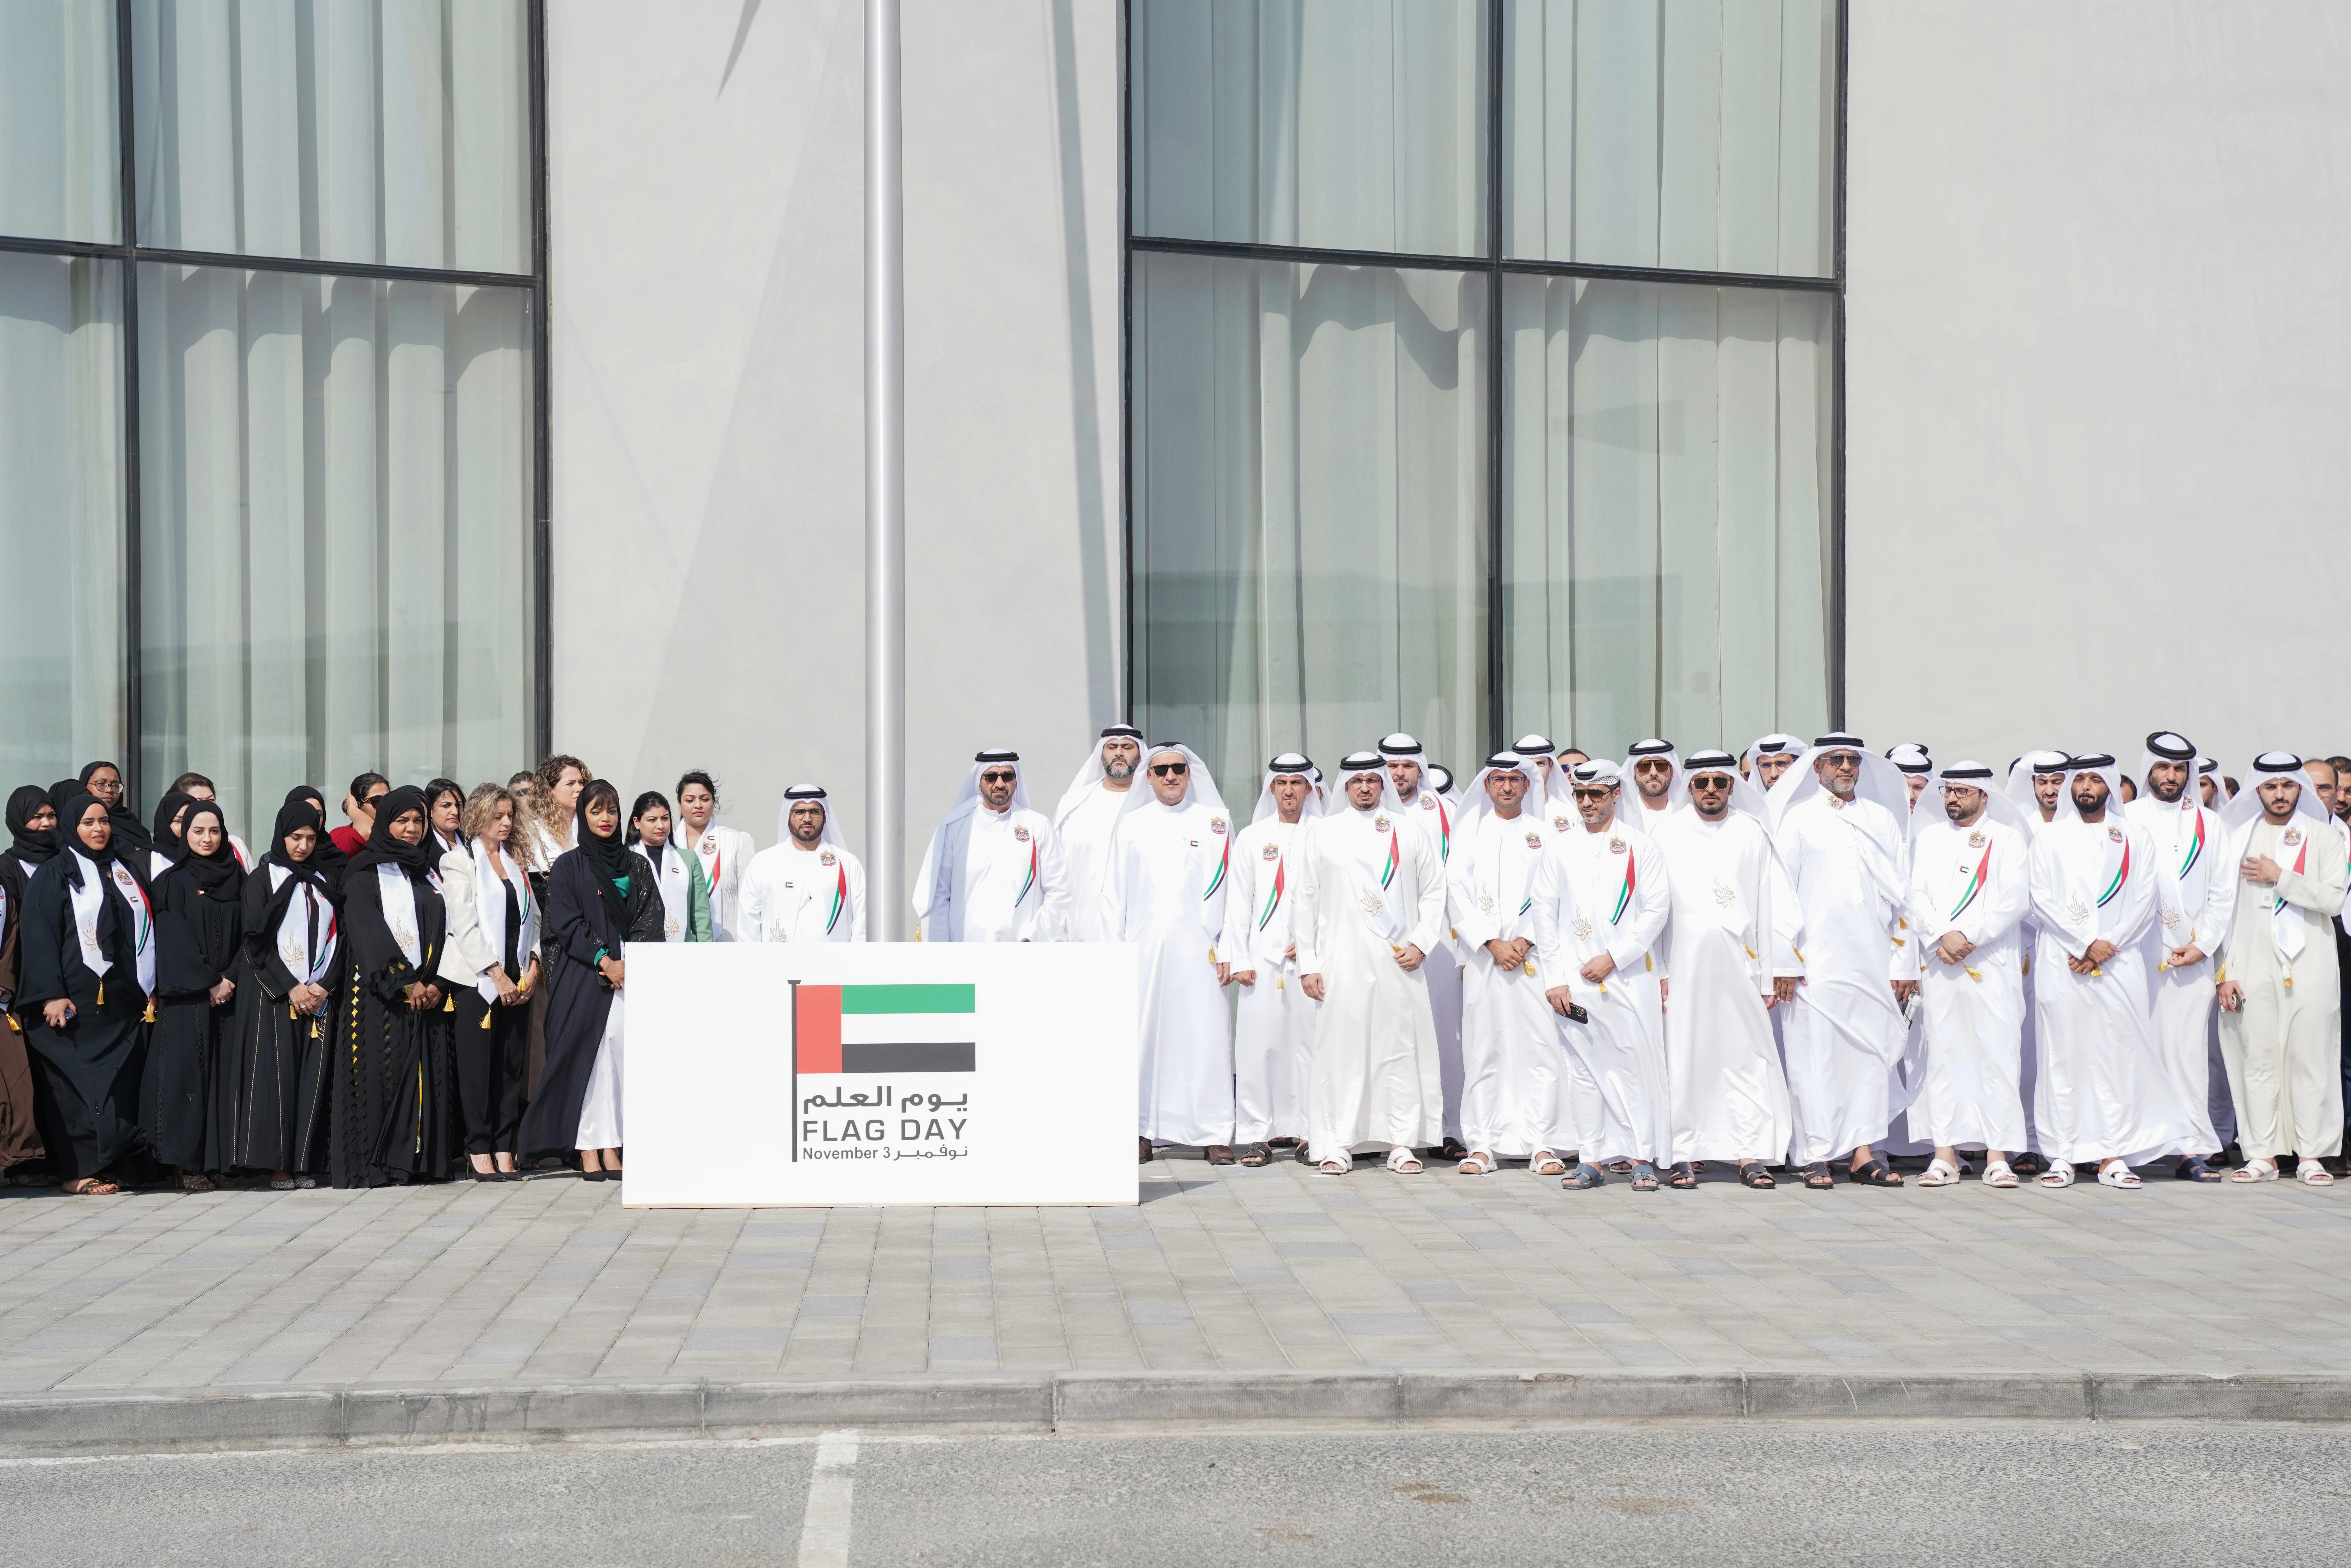 Wasl Celebrates The Spirit of the Union on UAE Flag Day